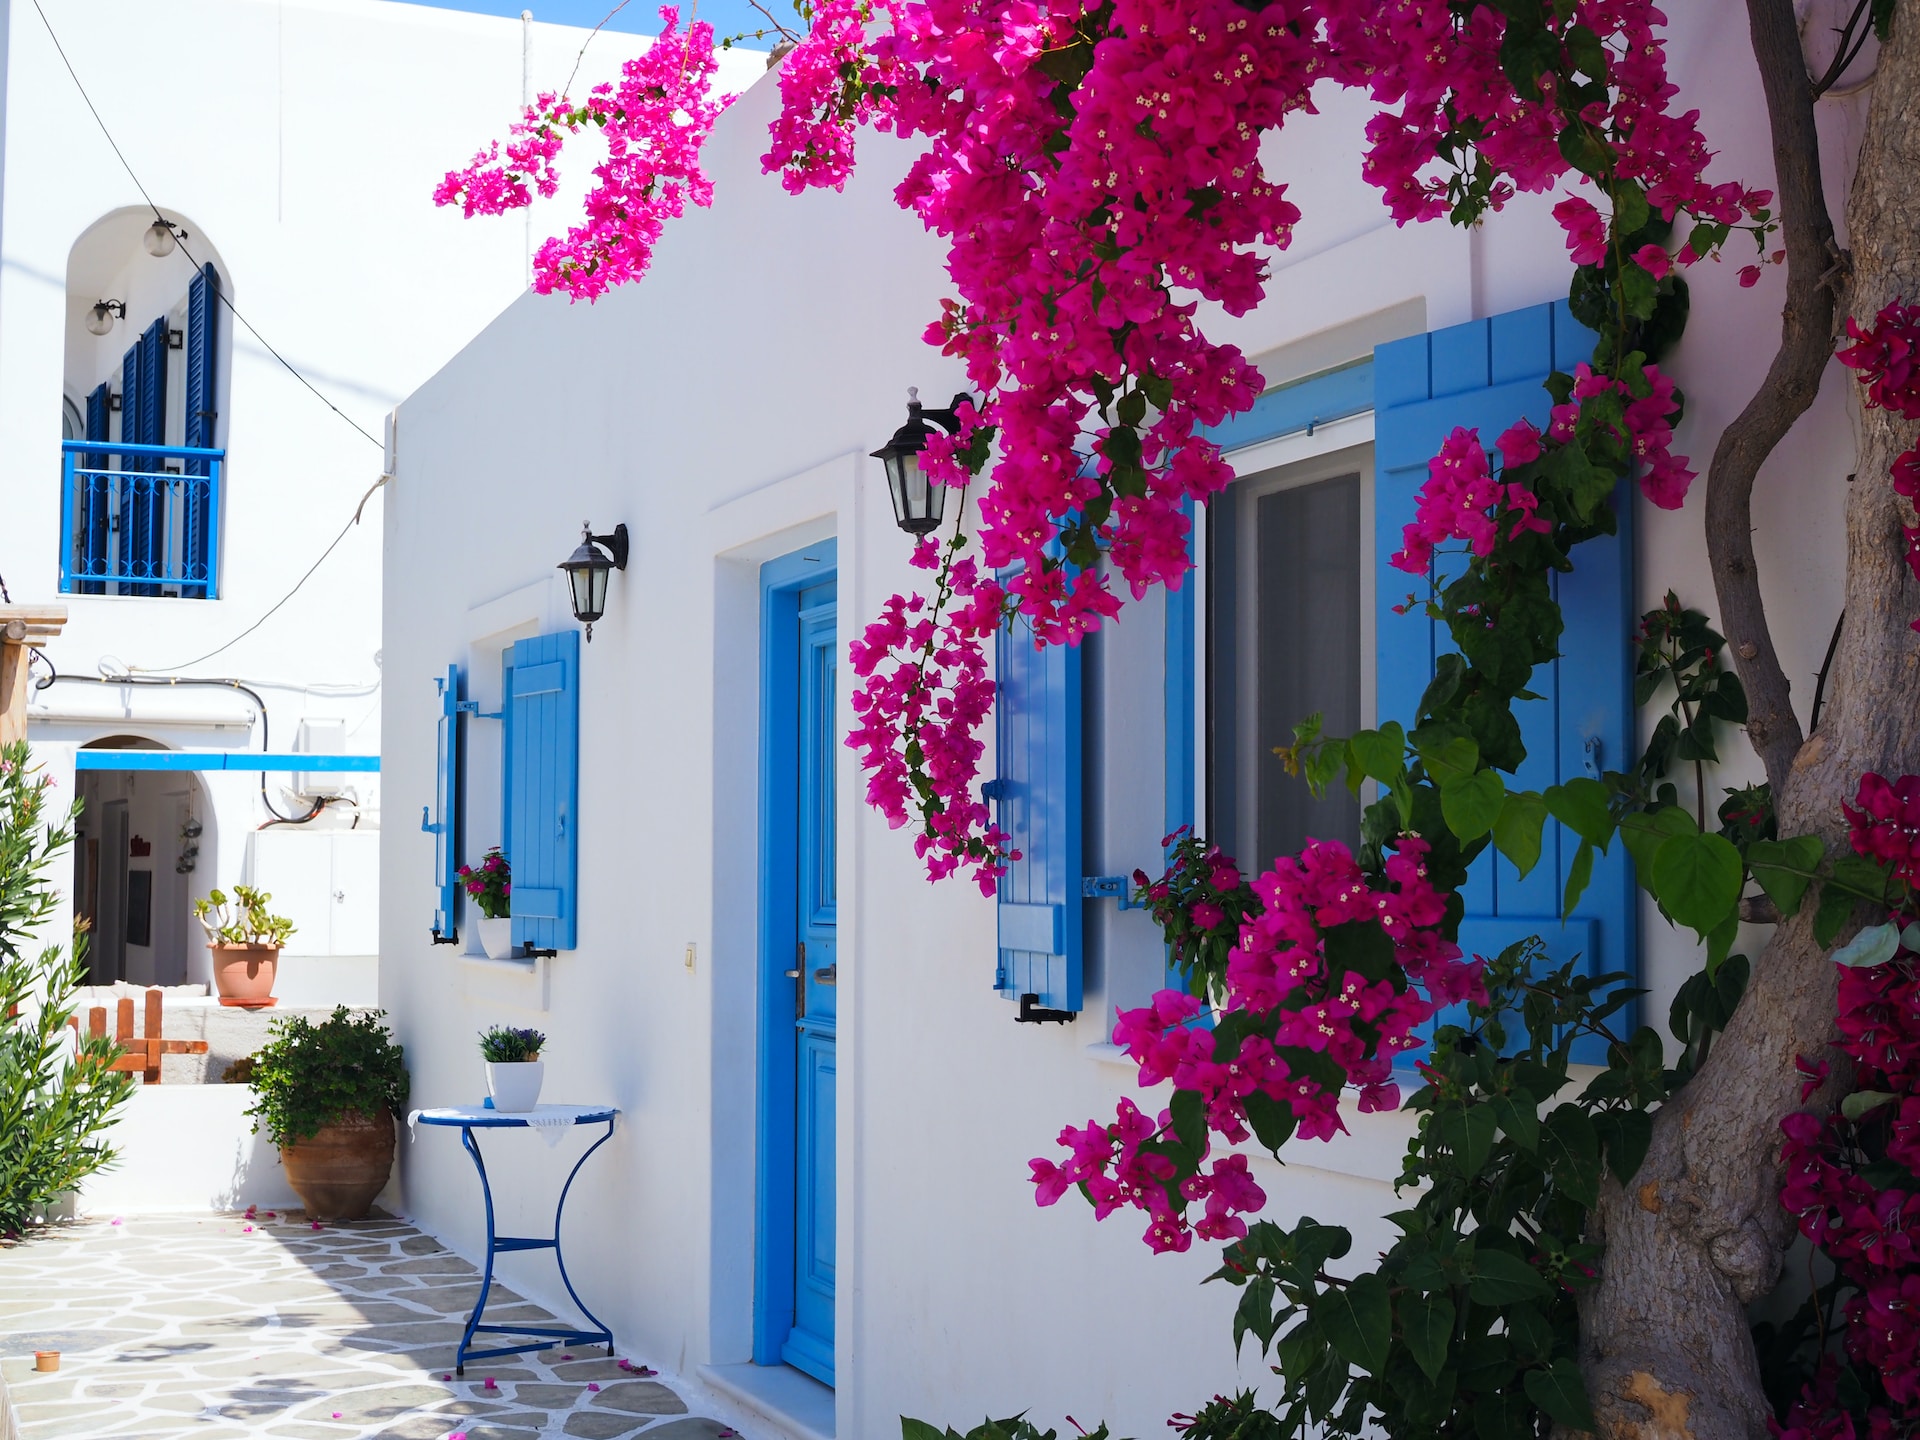 Urlaub in Griechenland - das ideale Ziel zum Last-Minute-Buchen!